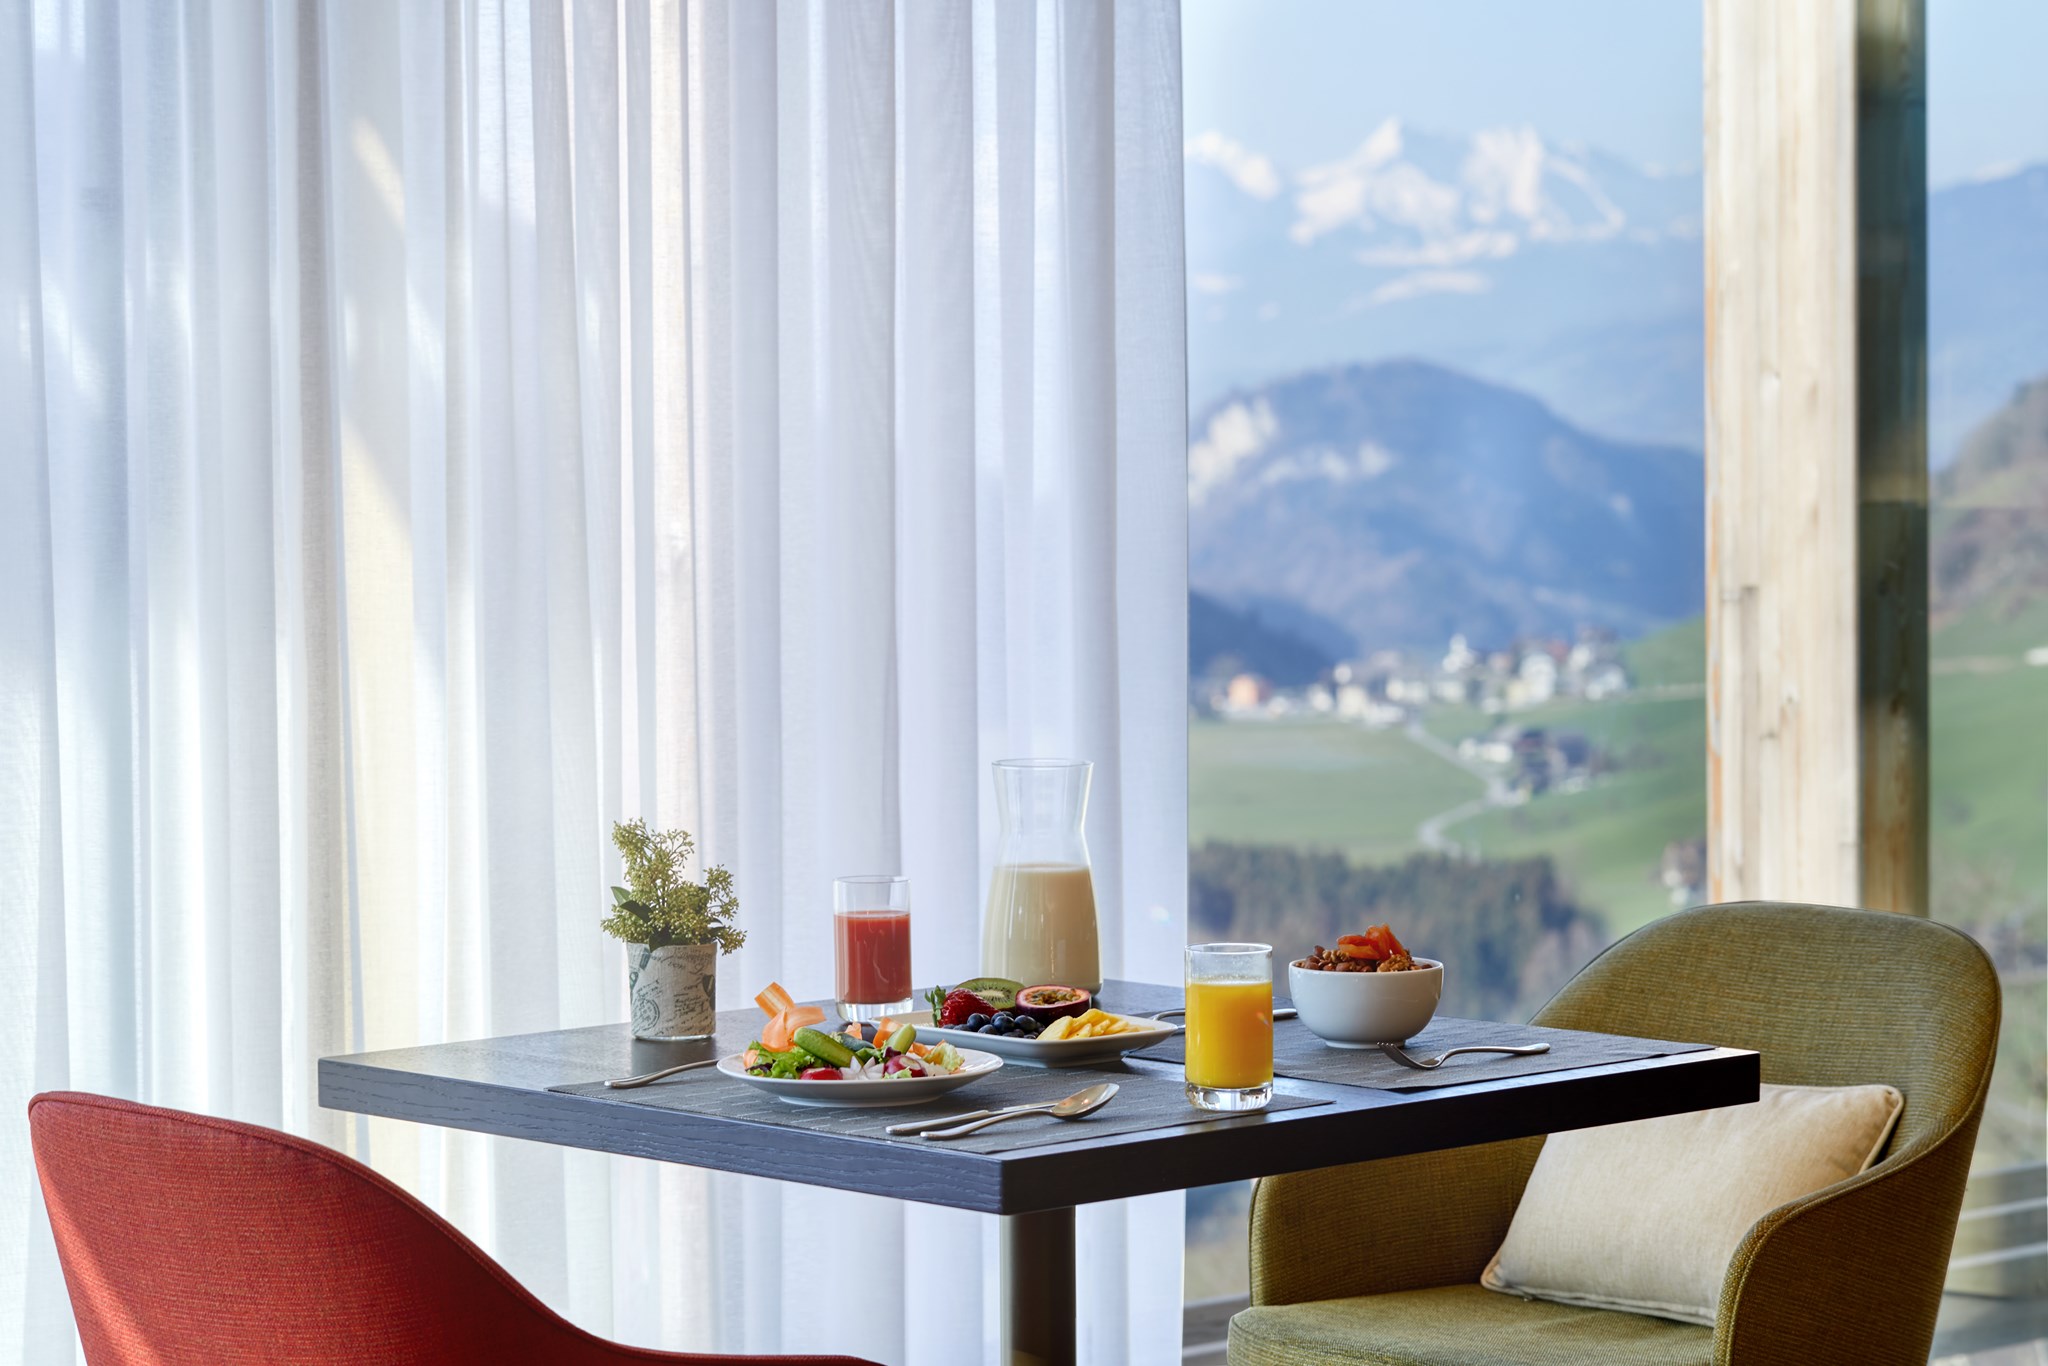 Resort kết hợp chăm sóc sức khỏe đậm chất thượng lưu ở Thụy Sĩ - 11